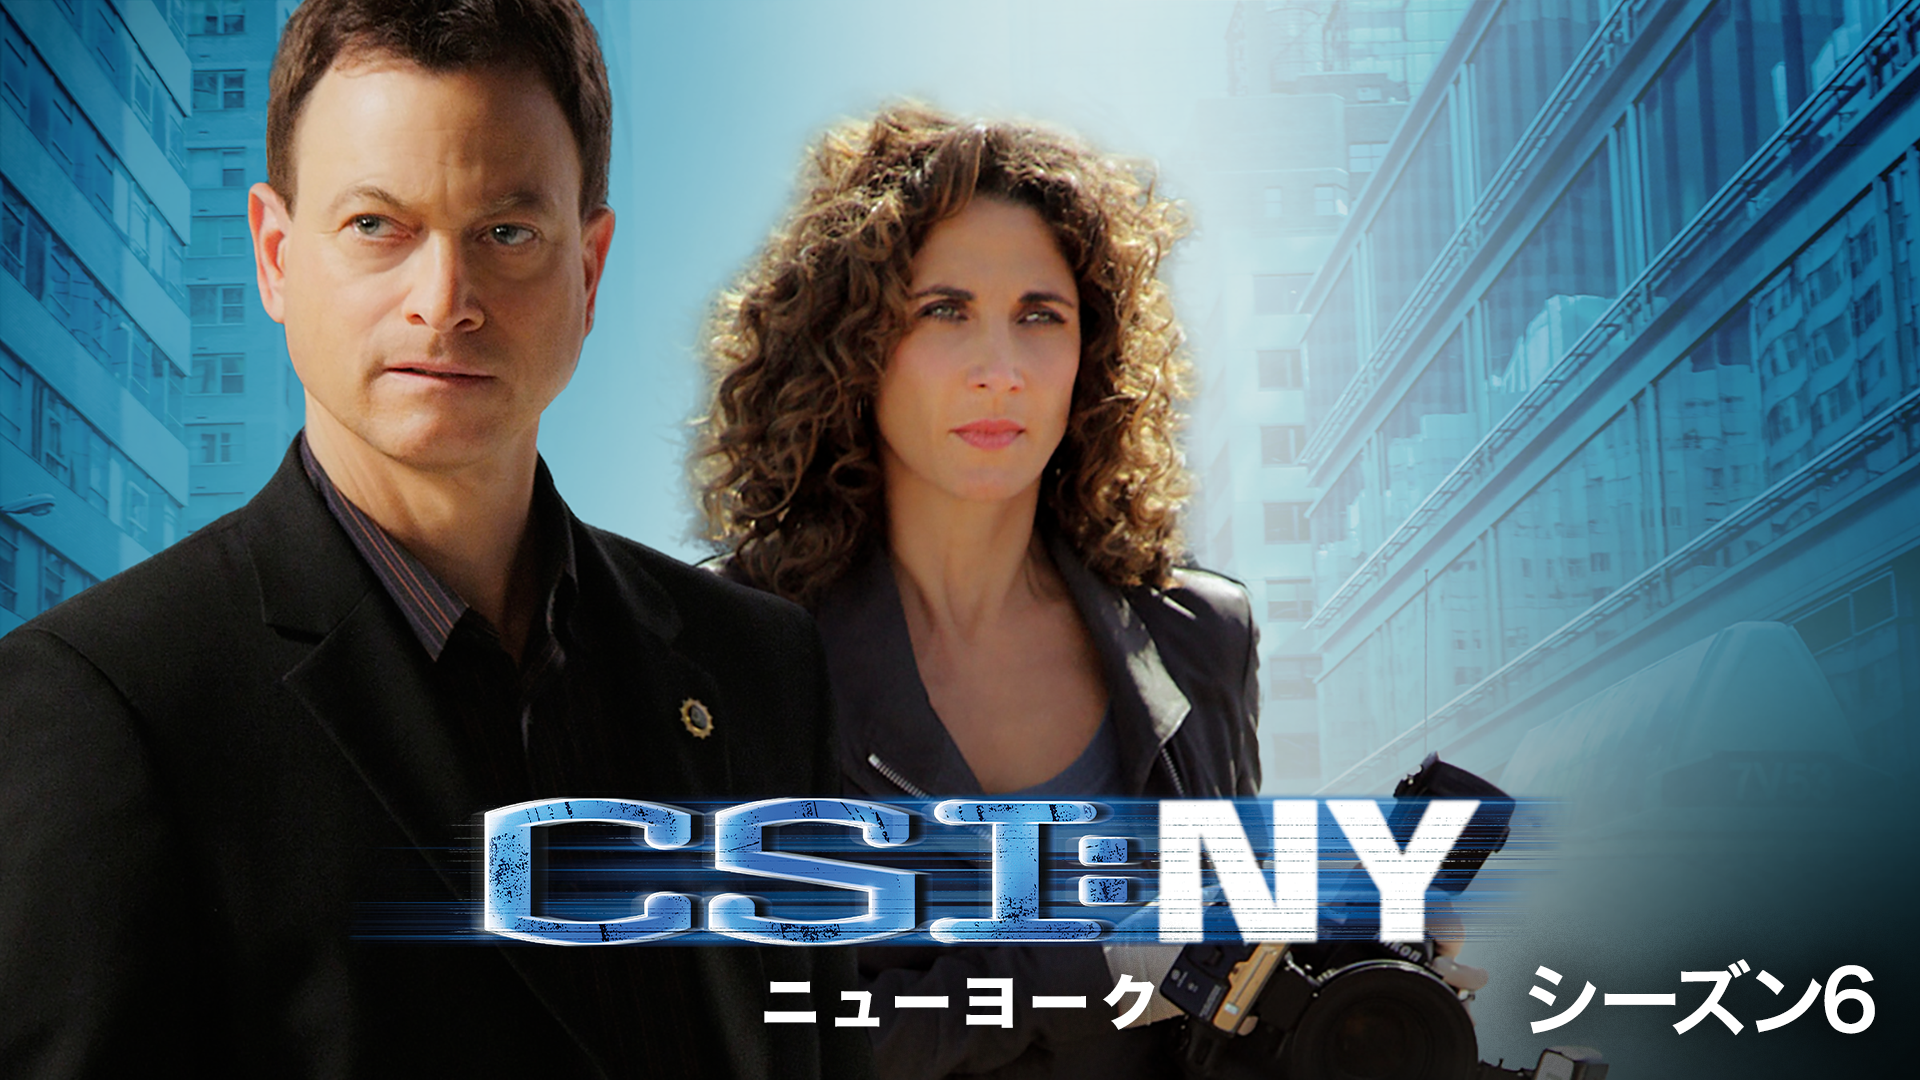 CSI：ニューヨーク シーズン7(海外ドラマ / 2010) - 動画配信 | U-NEXT 31日間無料トライアル